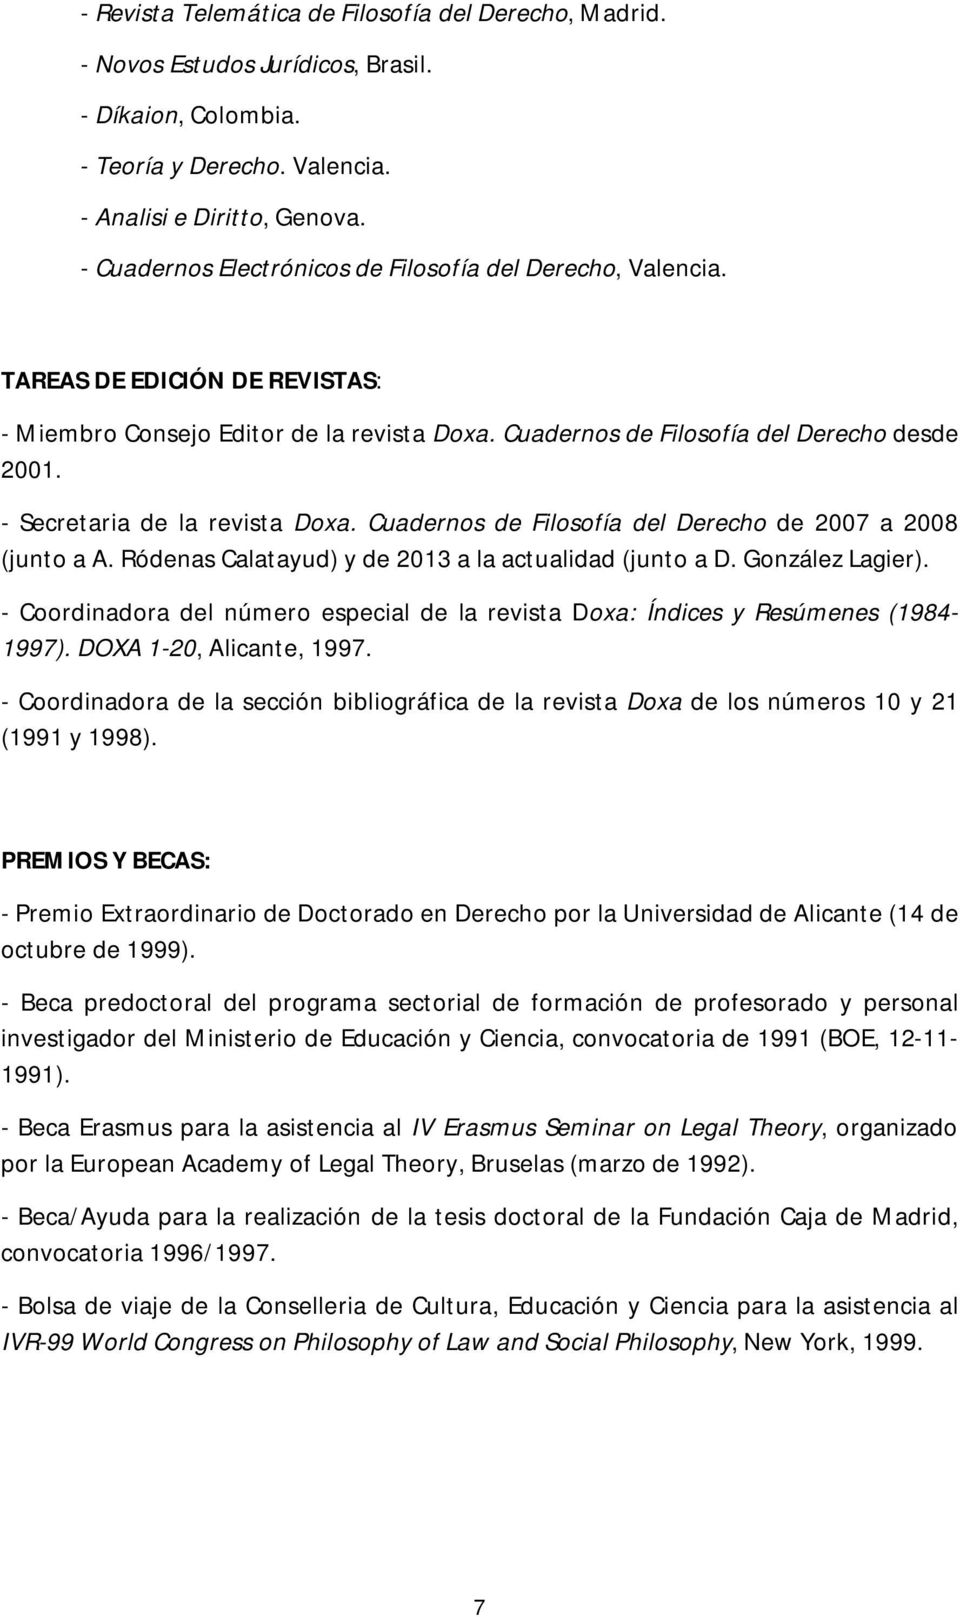 - Secretaria de la revista Doxa. Cuadernos de Filosofía del Derecho de 2007 a 2008 (junto a A. Ródenas Calatayud) y de 2013 a la actualidad (junto a D. González Lagier).